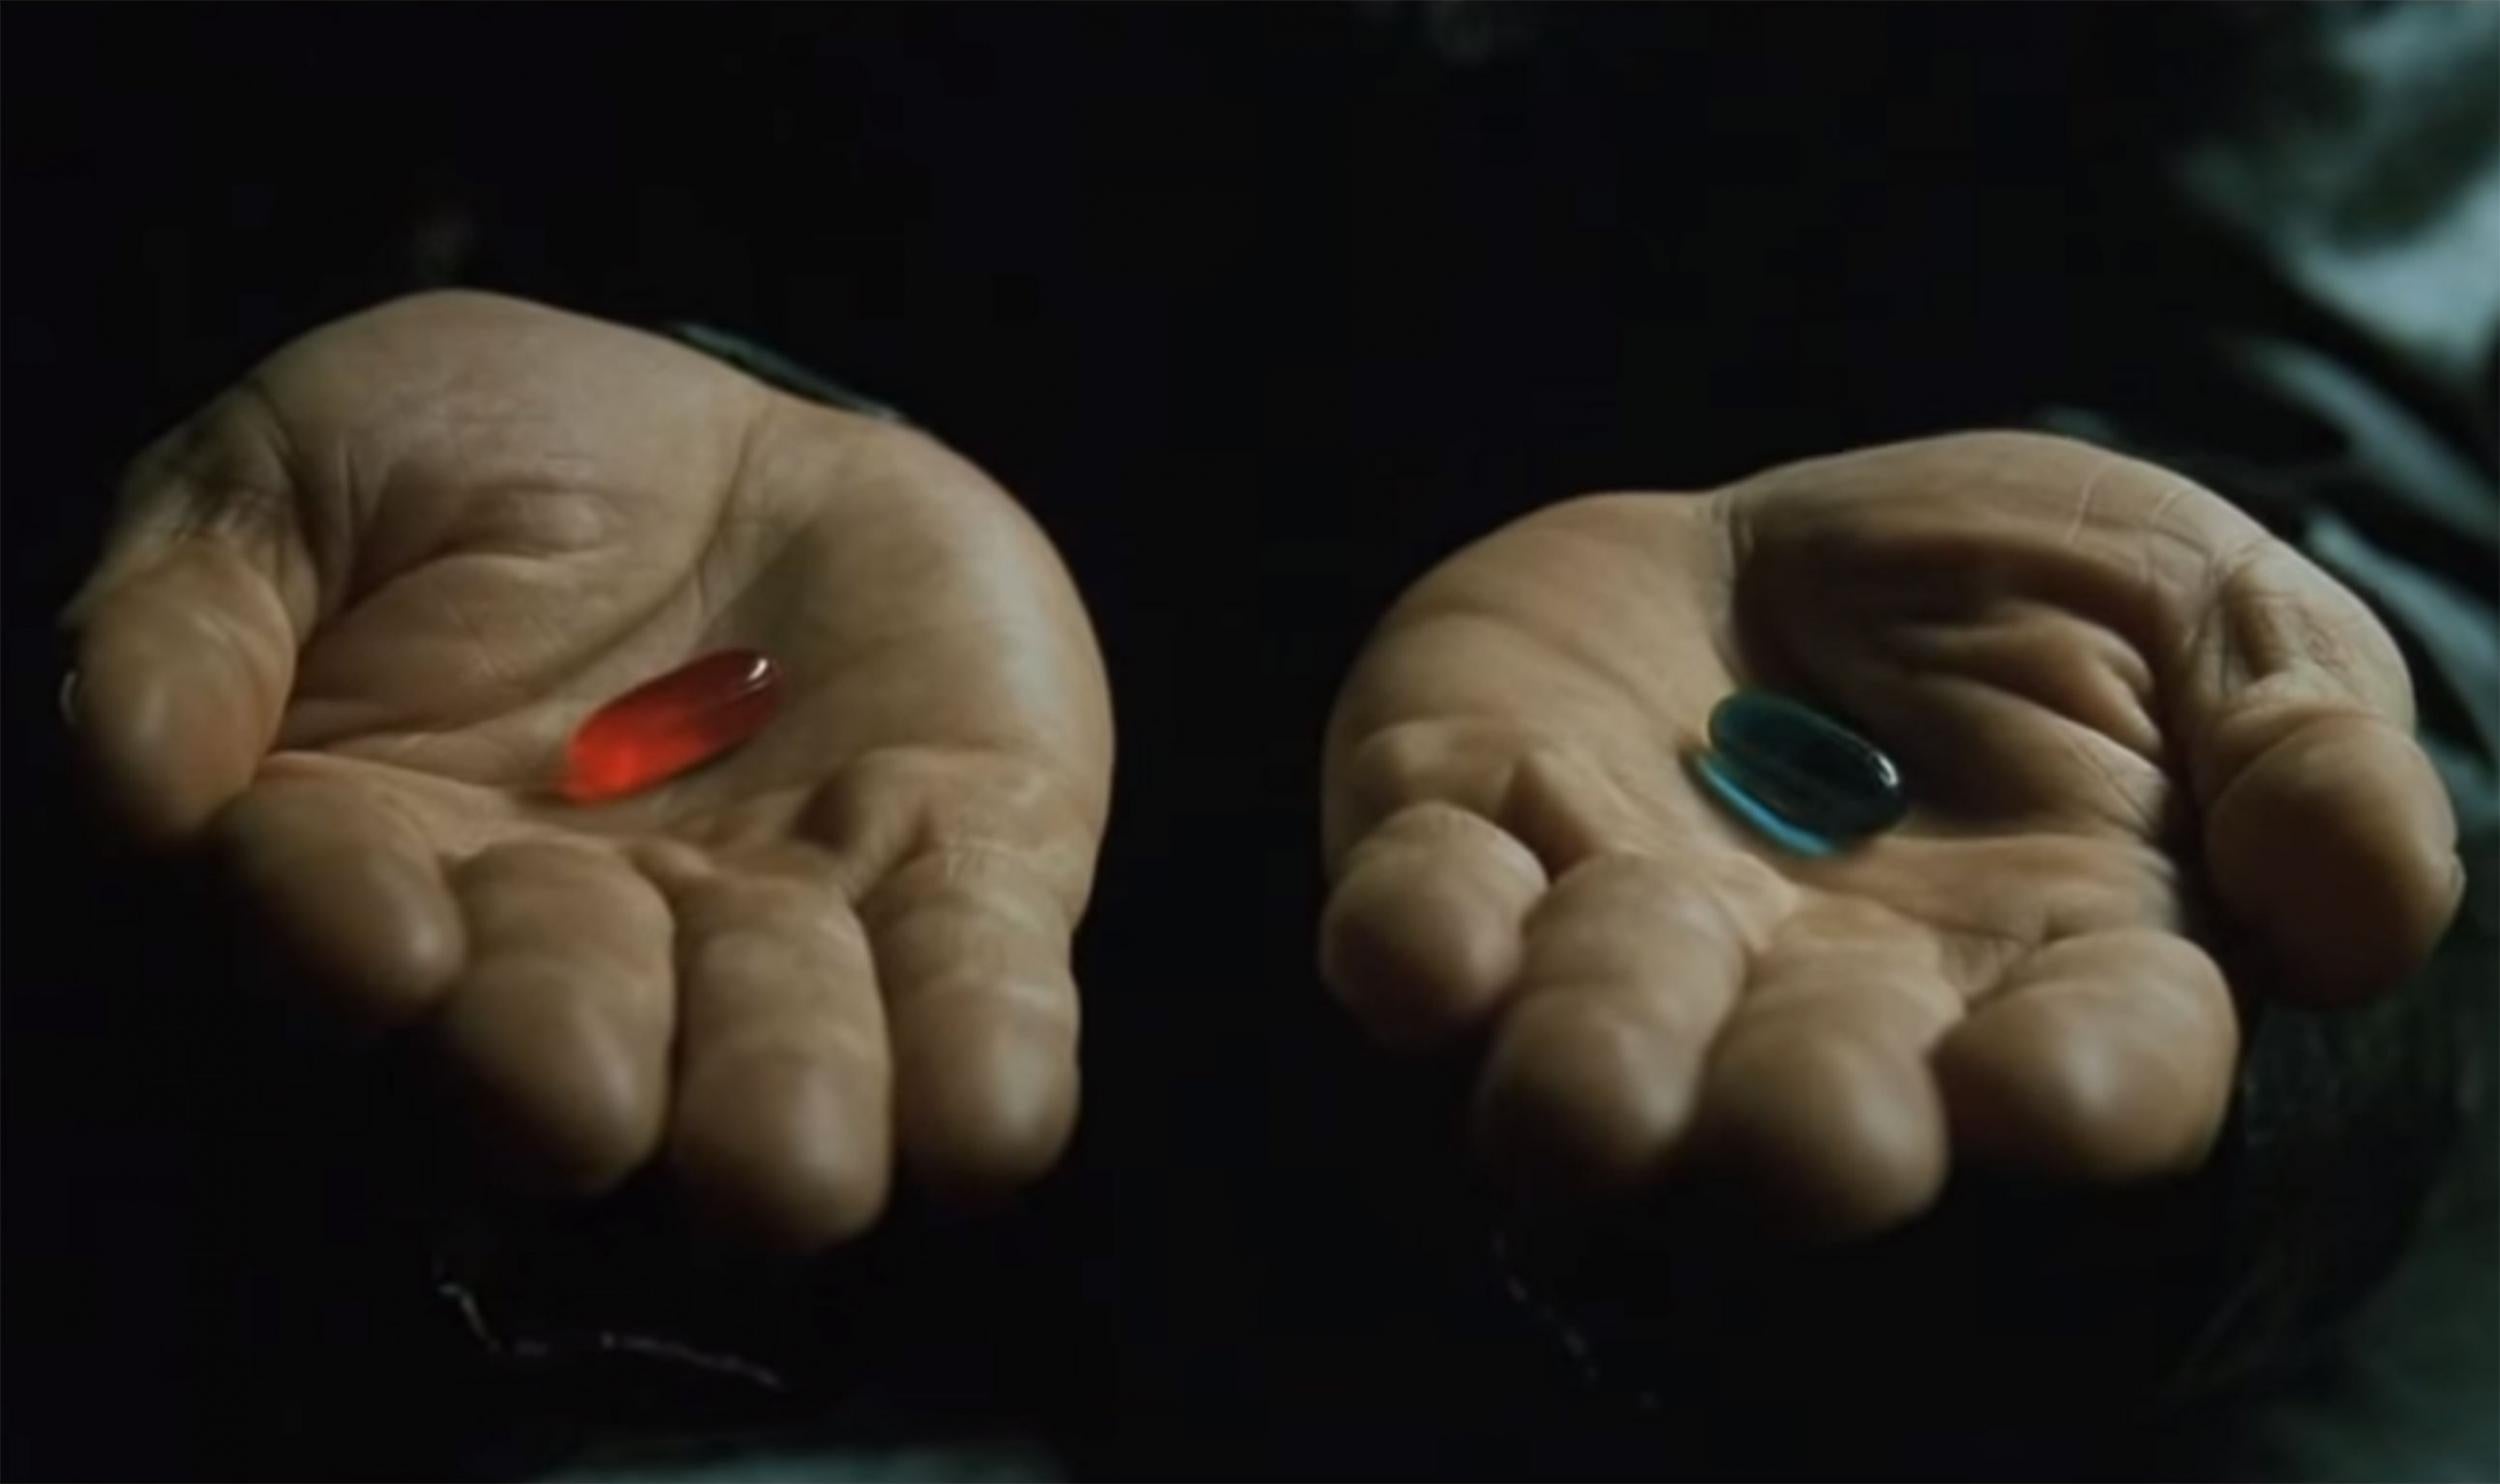 matrix red pill and blue pill